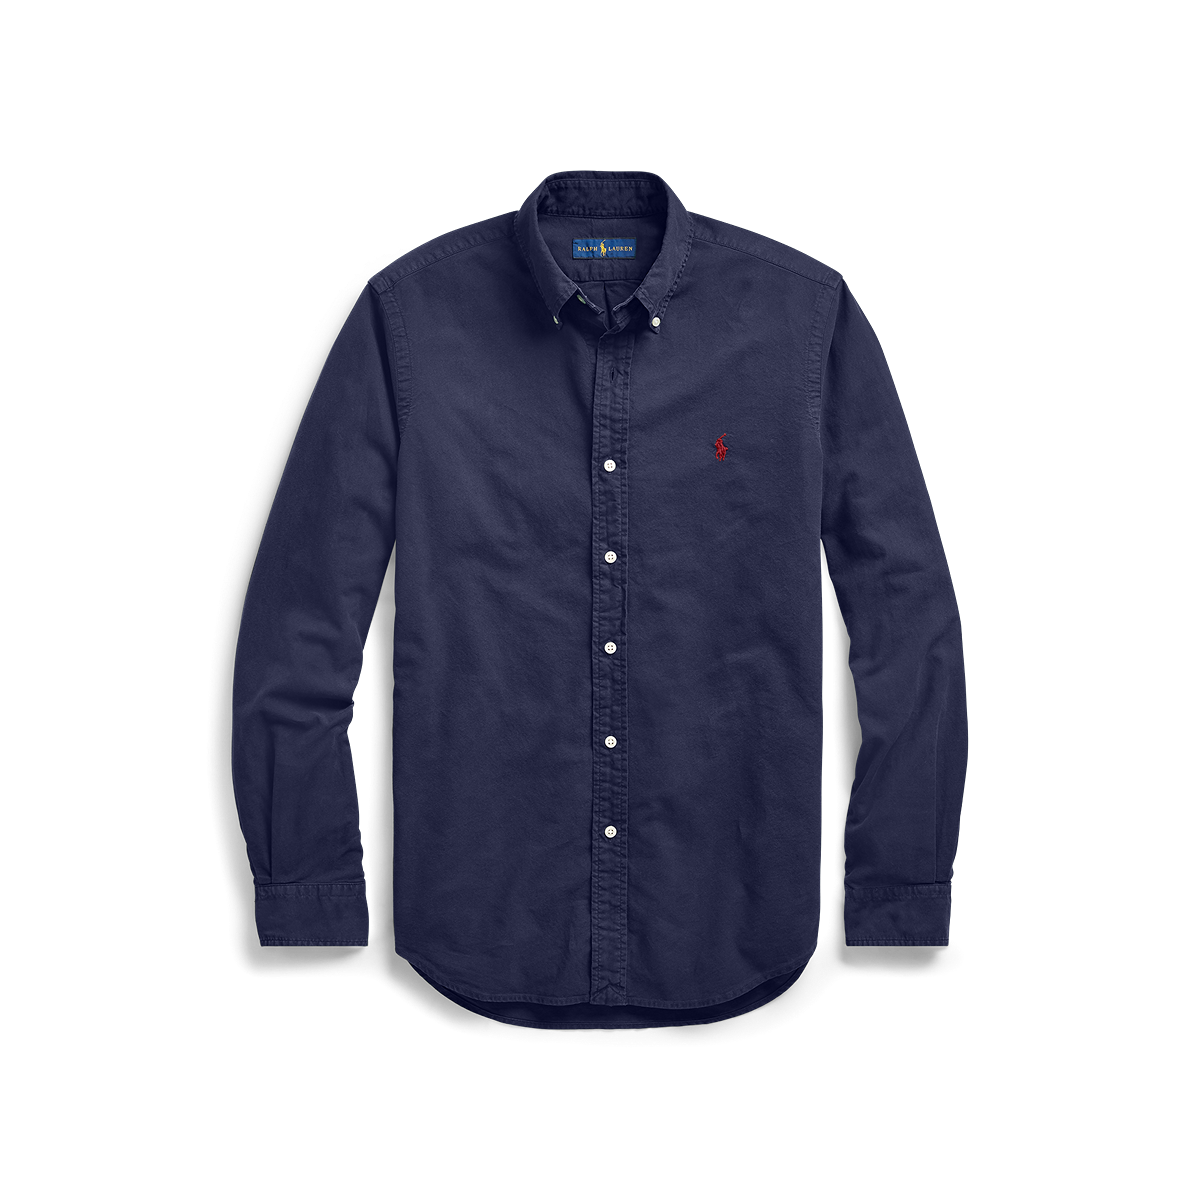 Ralph Lauren Garment Dyed Oxford Sport Shirt - Classic Fit  ZSC32A Navy